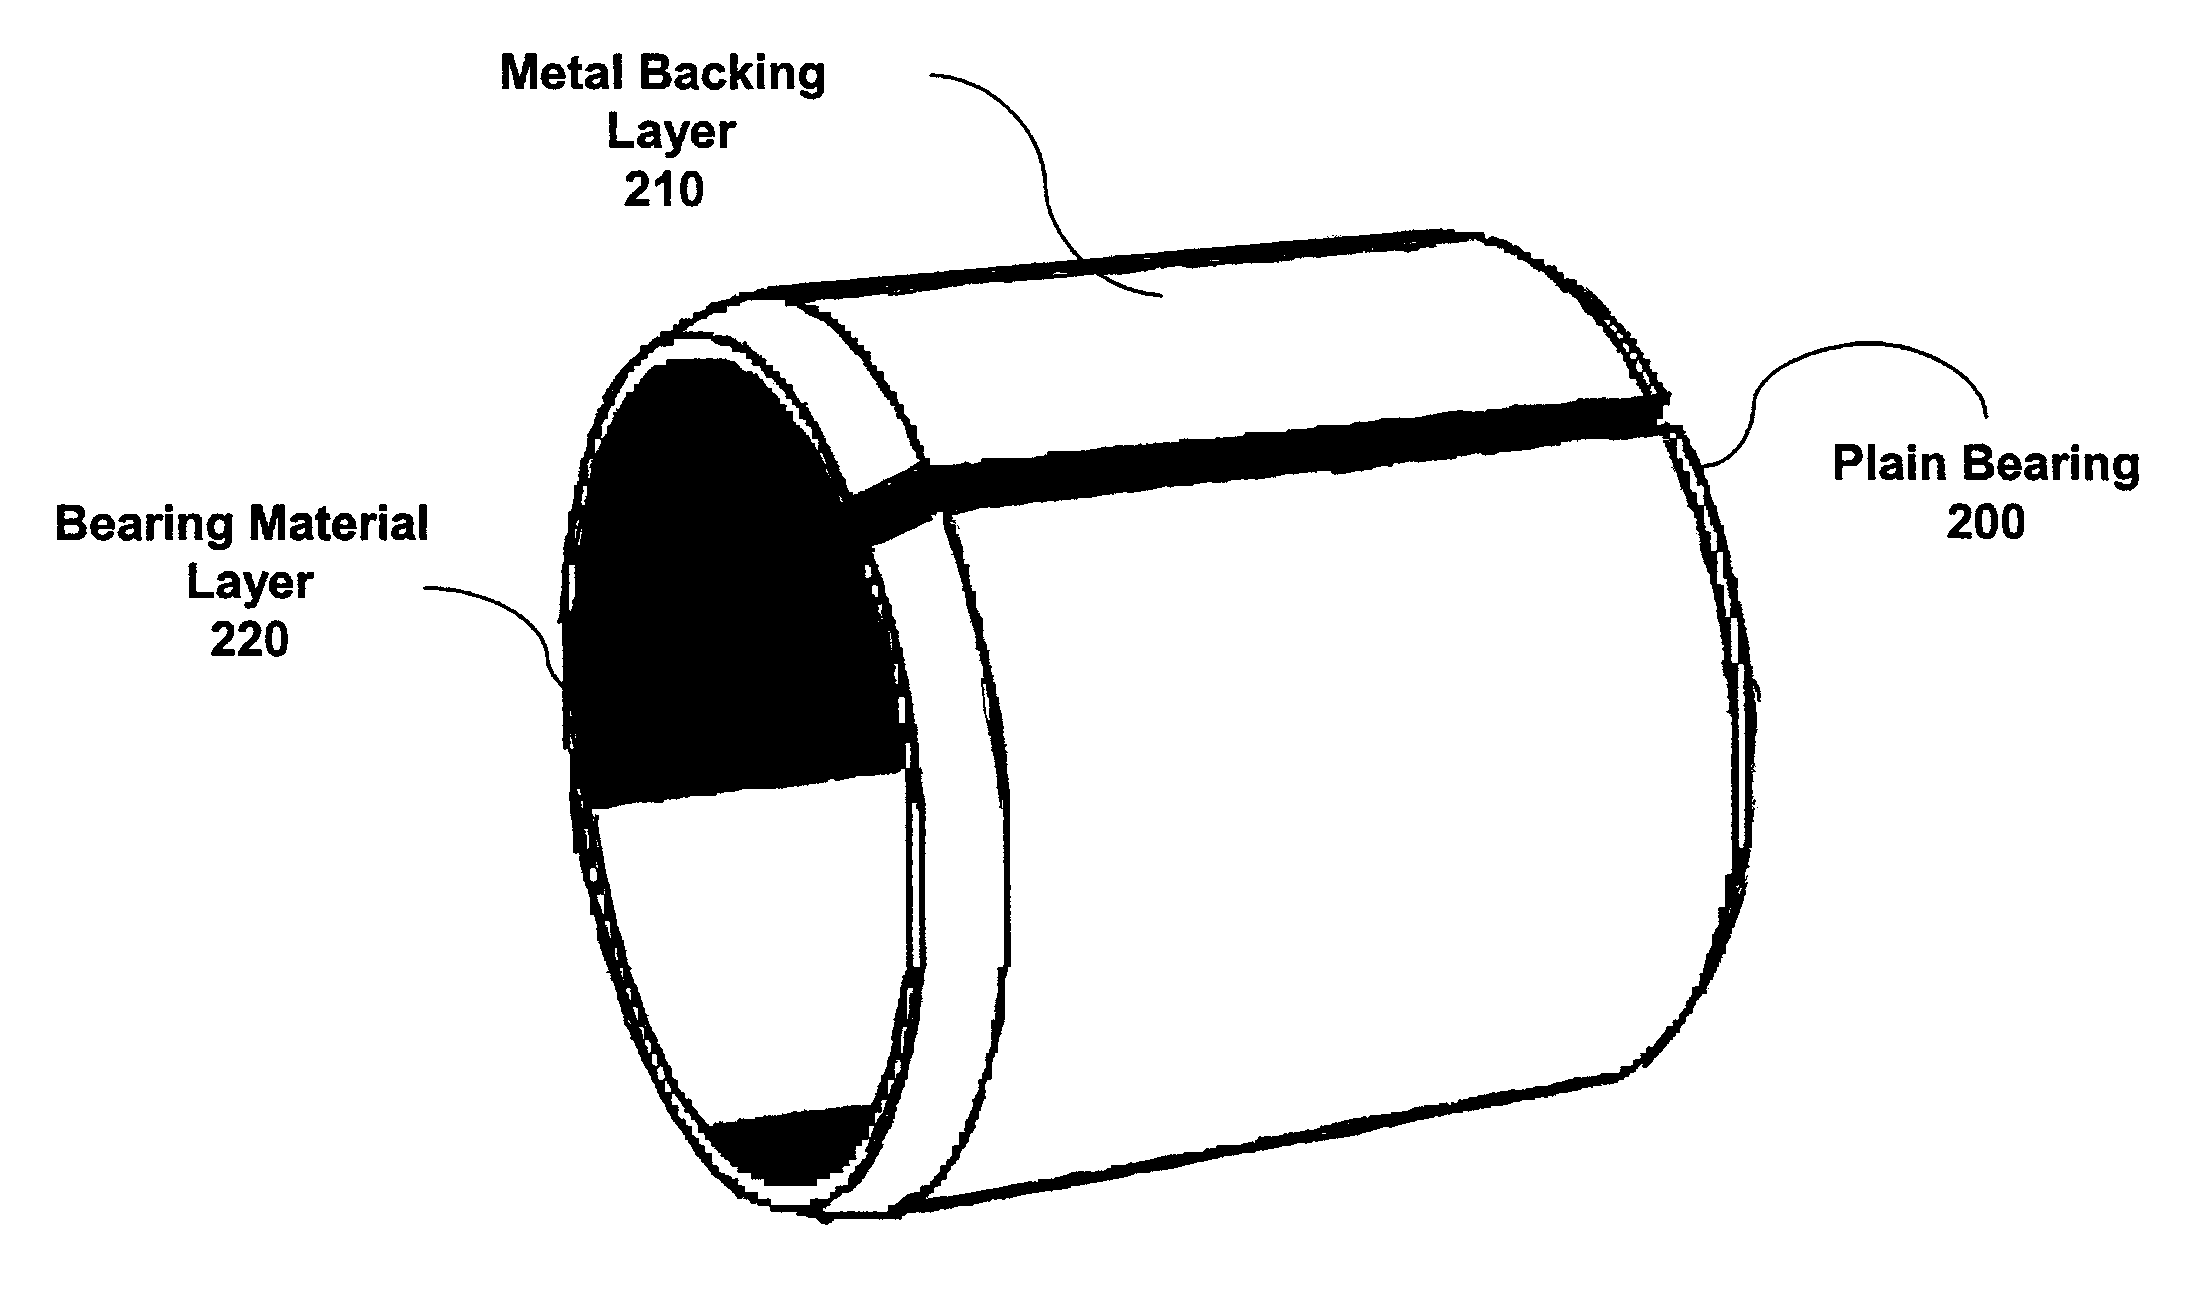 Metal-backed plain bearing